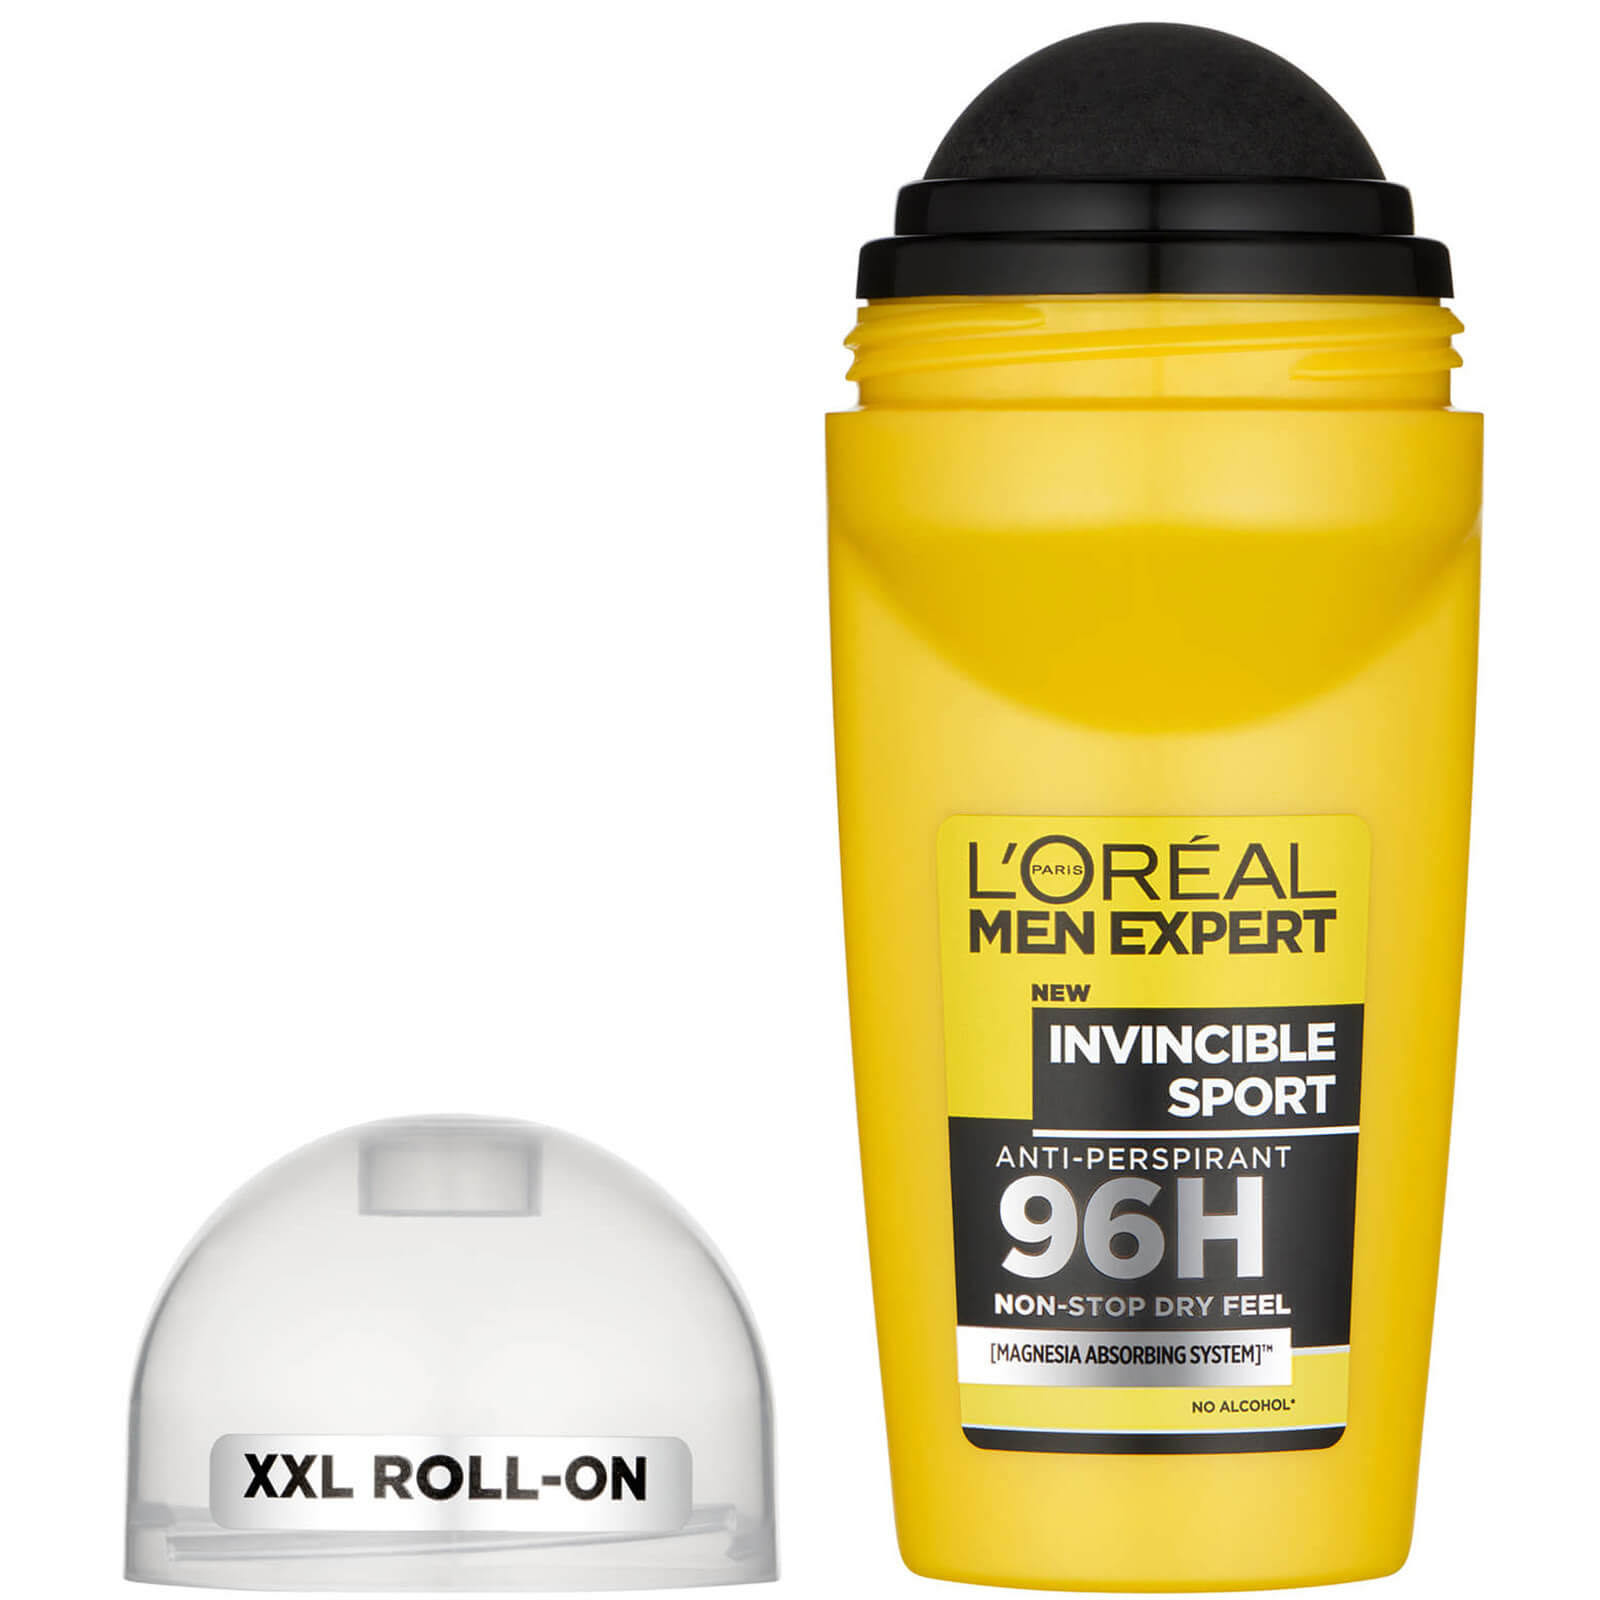 L'Oreal Men Expert 96H Anti-Perspirant Deodorant - Invincible Sport, 50ml